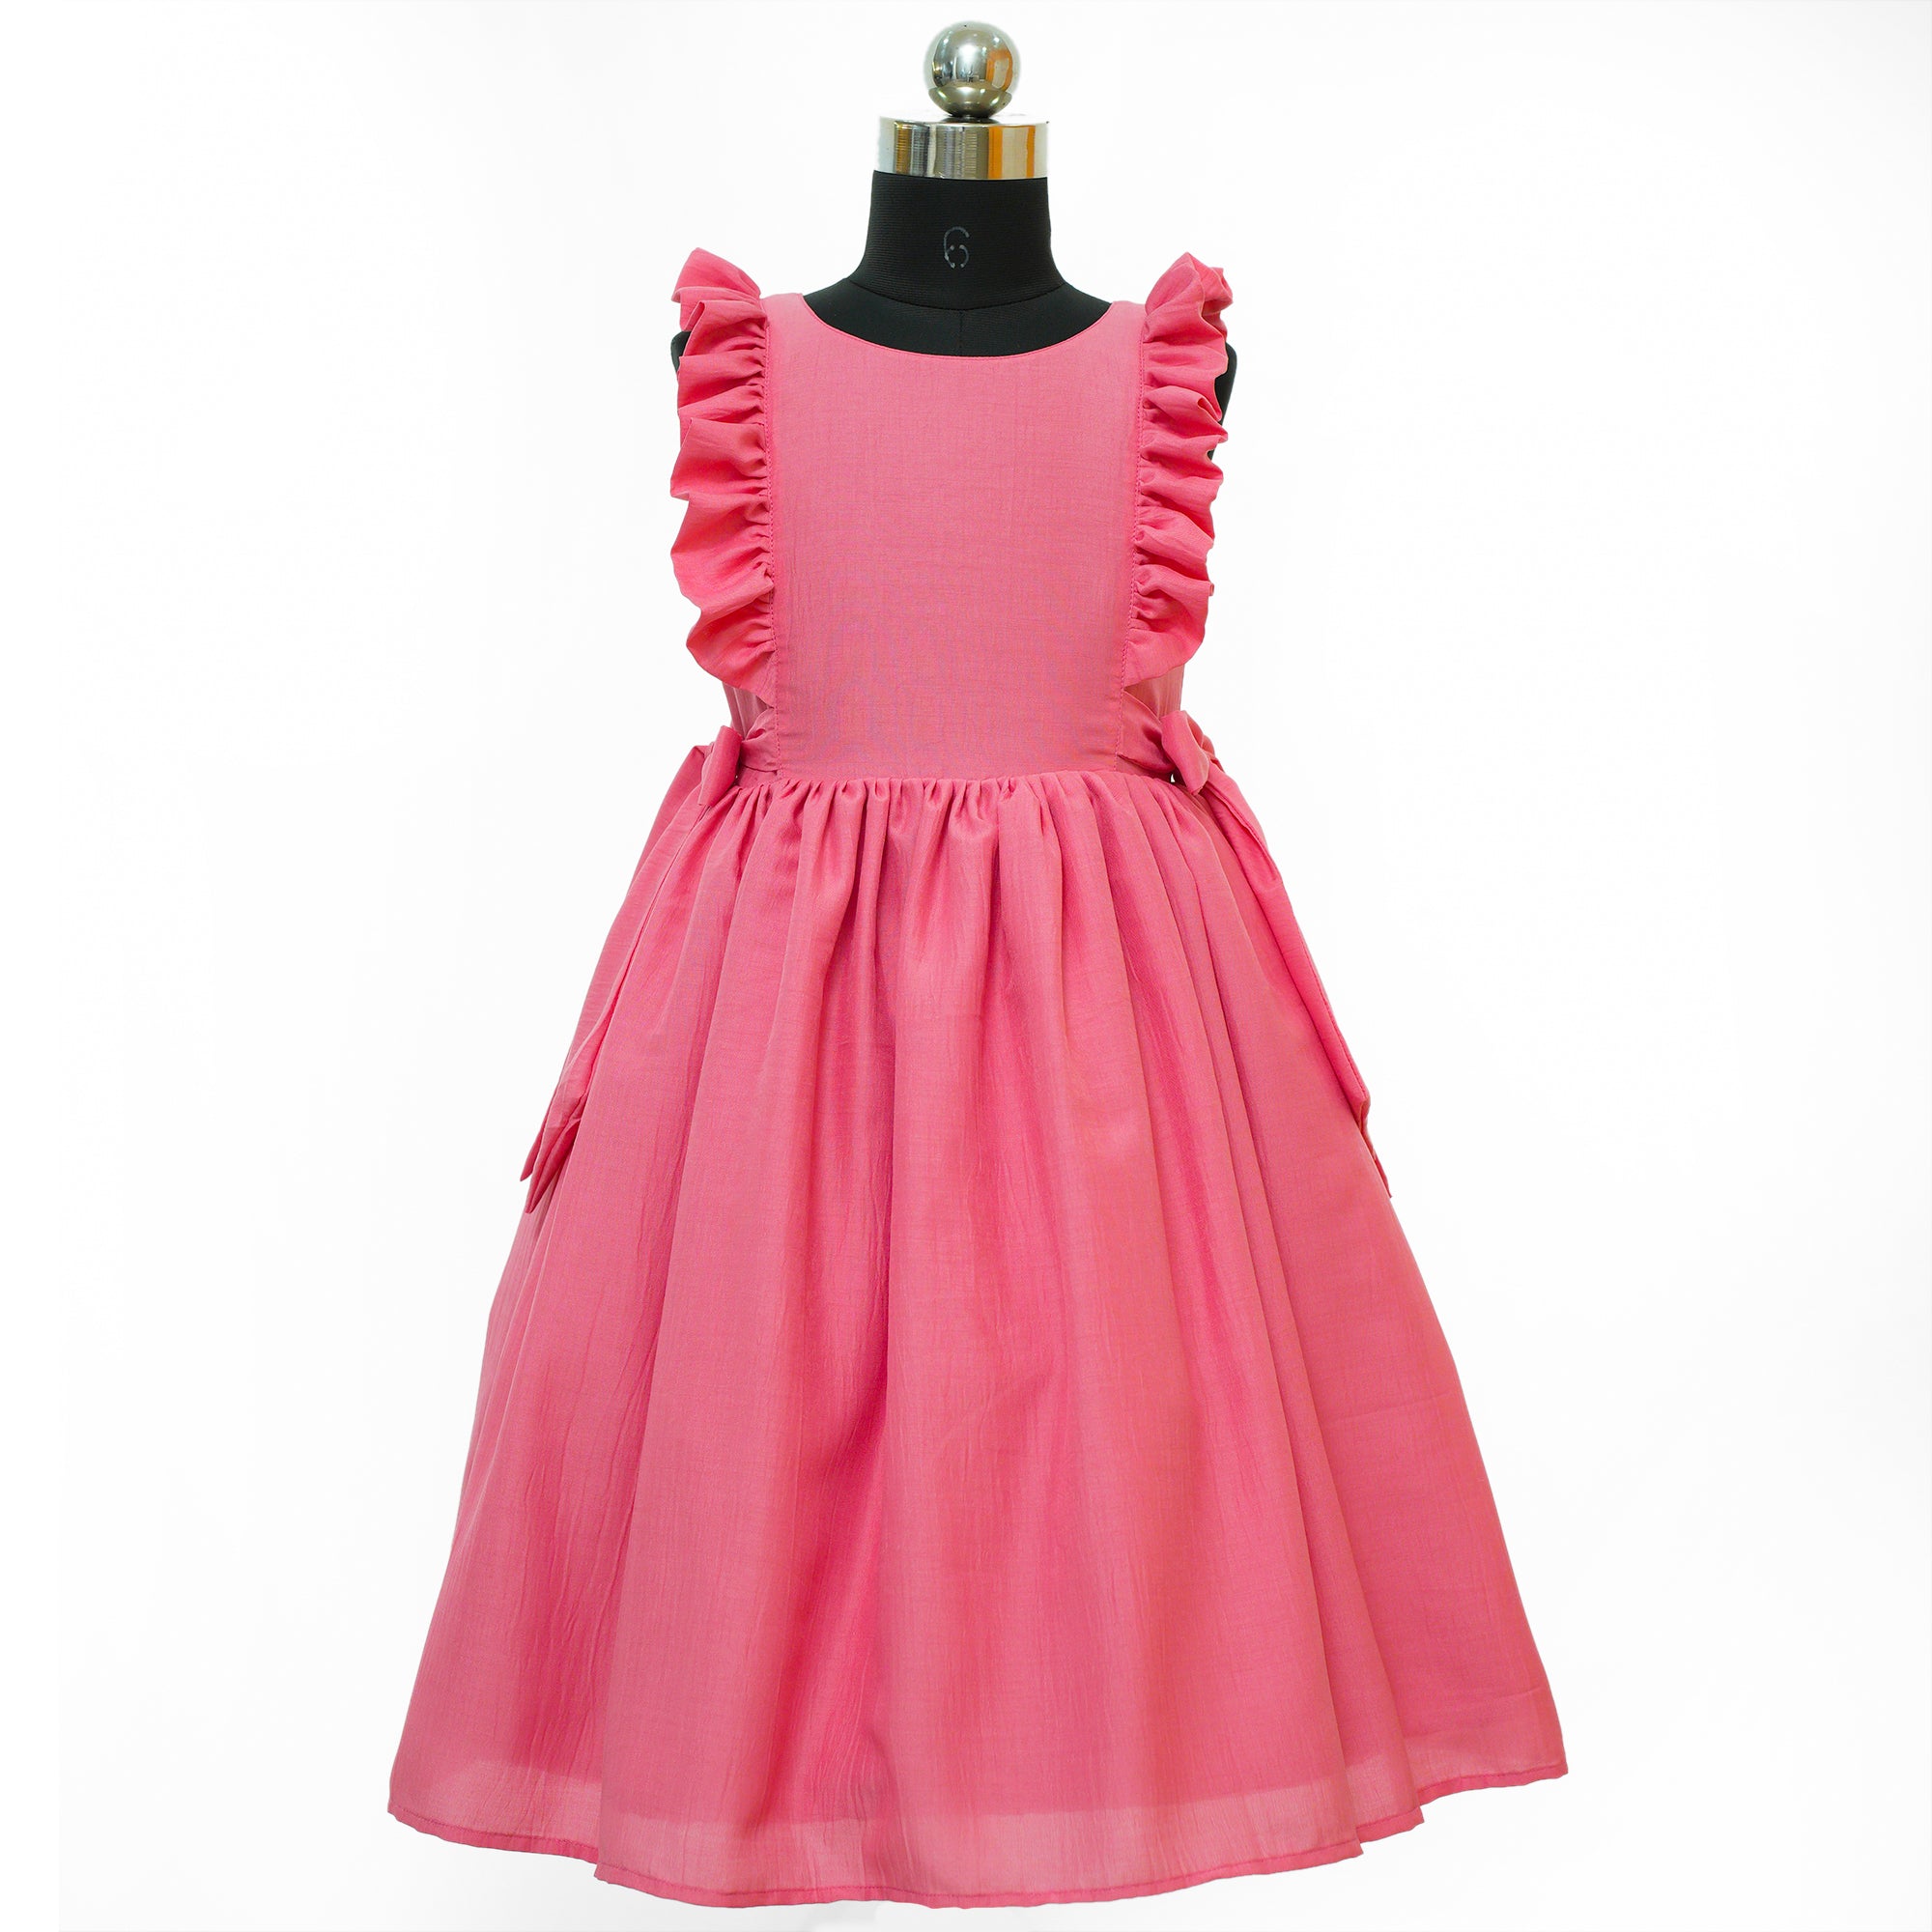 Girls Party Dress Hot Pink Blue Fancy Dress 3 4 5 6 7 Years | eBay